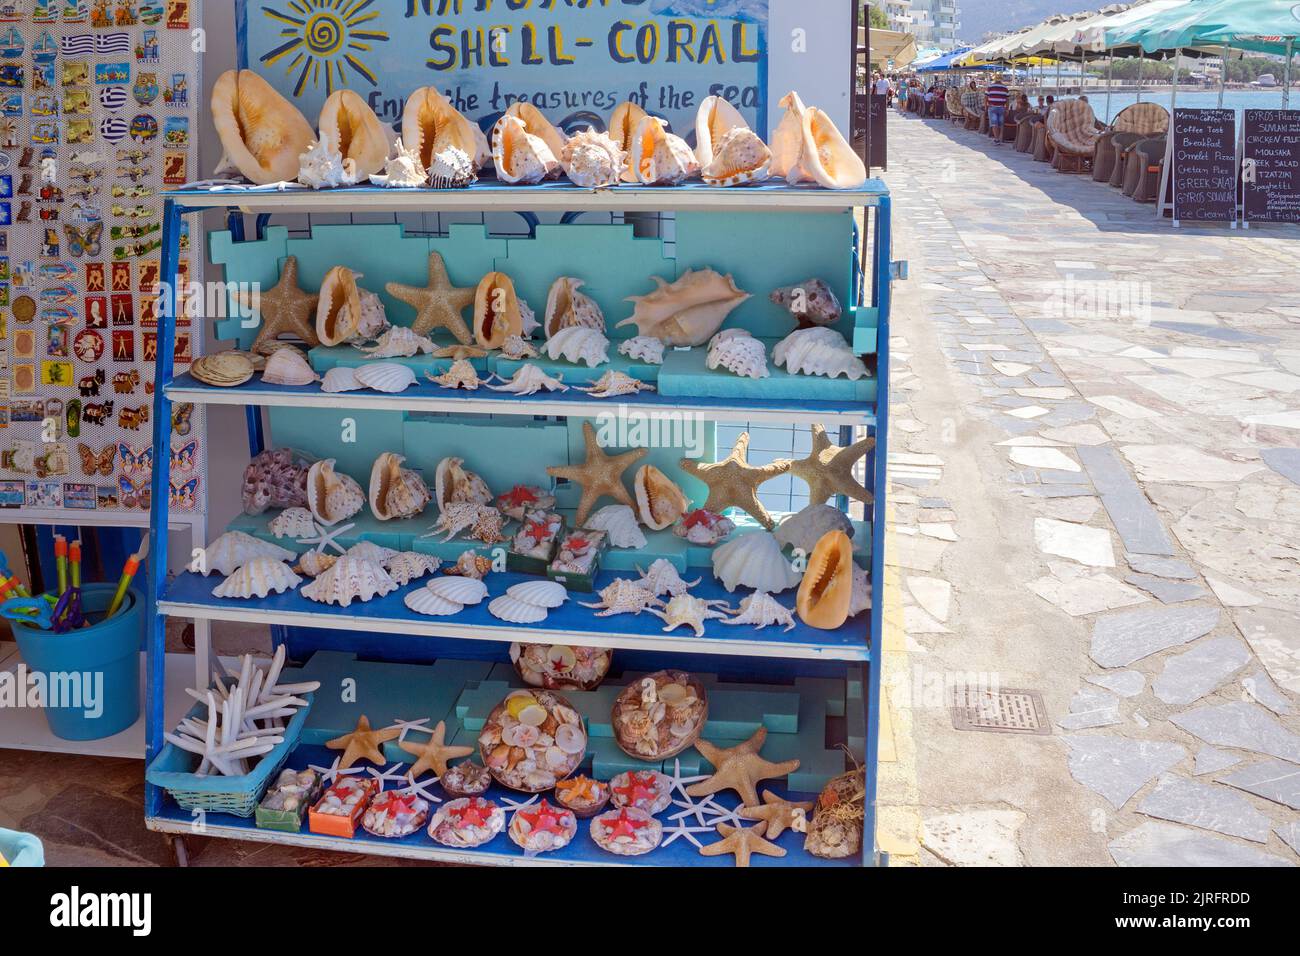 Verkauf von toten Meerestieren in einem Touristenshop auf der Promenade von Ierapetra, Ierapetra ist die suedlichste Stadt Griechenlands, Kreta, Griec Stock Photo